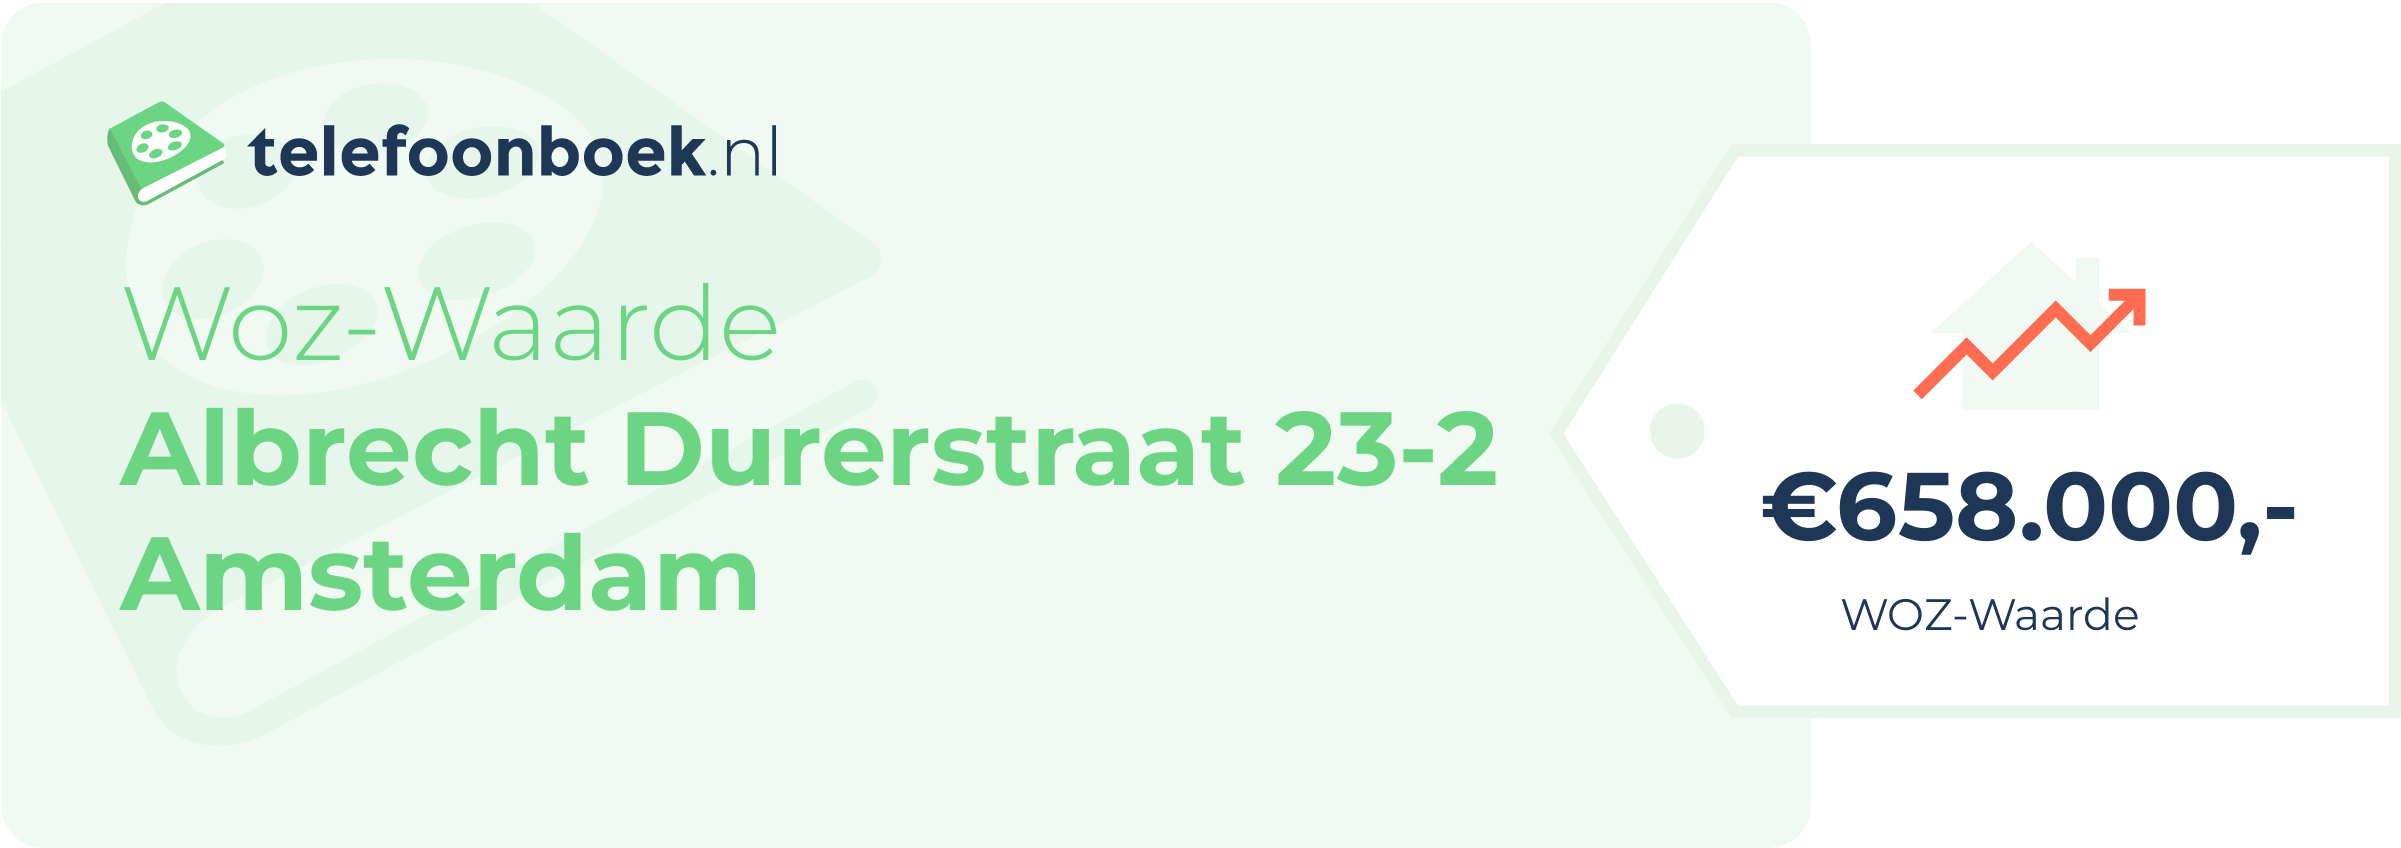 WOZ-waarde Albrecht Durerstraat 23-2 Amsterdam